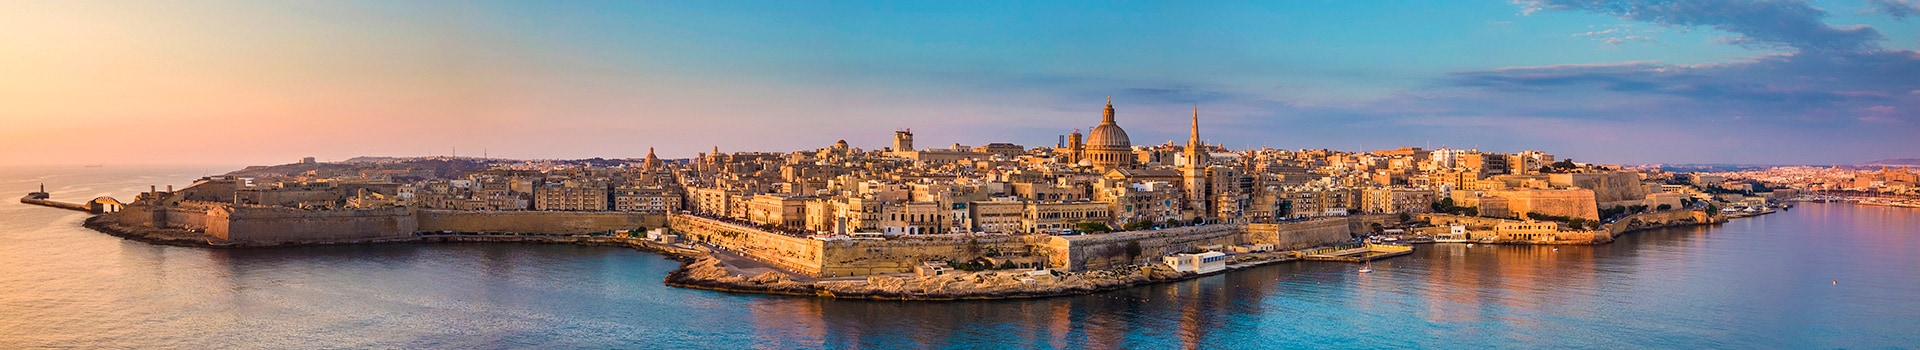 Oporto - Malta